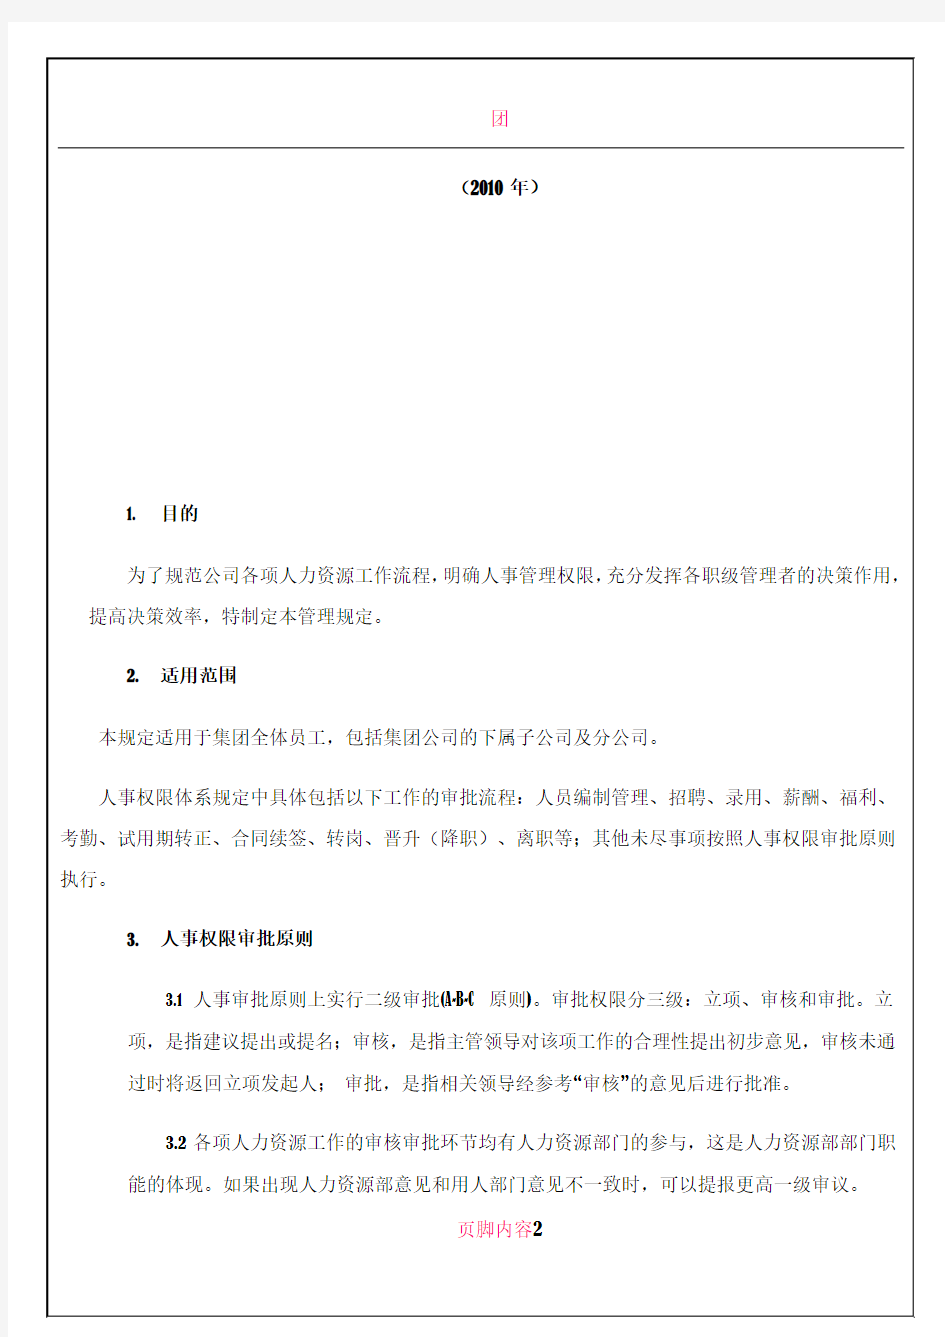 京东商城人事权限管理制度(2010版)